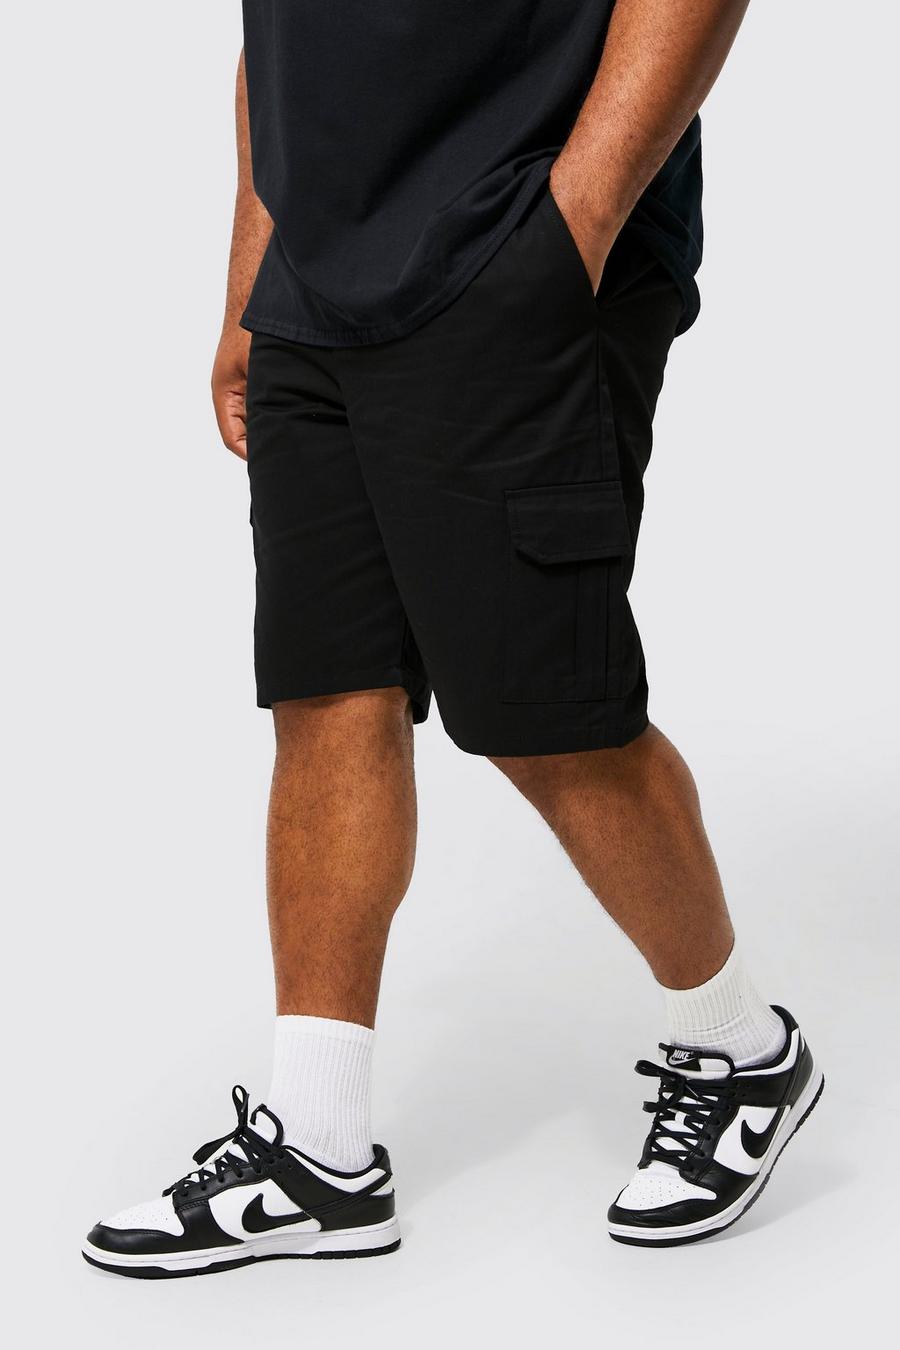 Pantaloncini Cargo Plus Size con vita elasticizzata, Black nero